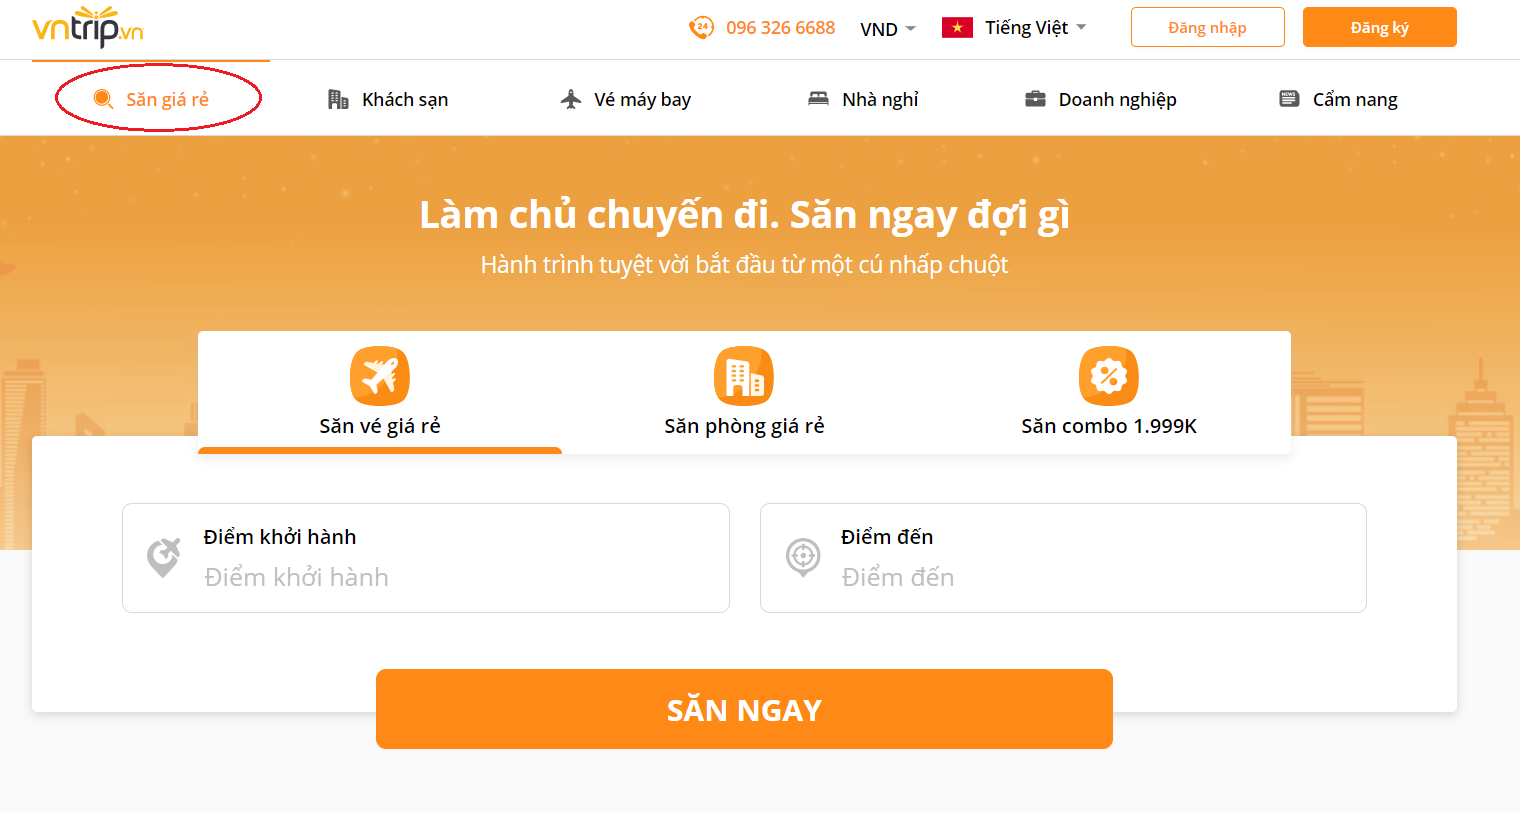 Website Vntrip.vn có giao diện đơn giản, thân thiện, dễ sử dụng chỉ với vài thao tác bạn đã dễ dàng săn được vé máy bay giá rẻ.